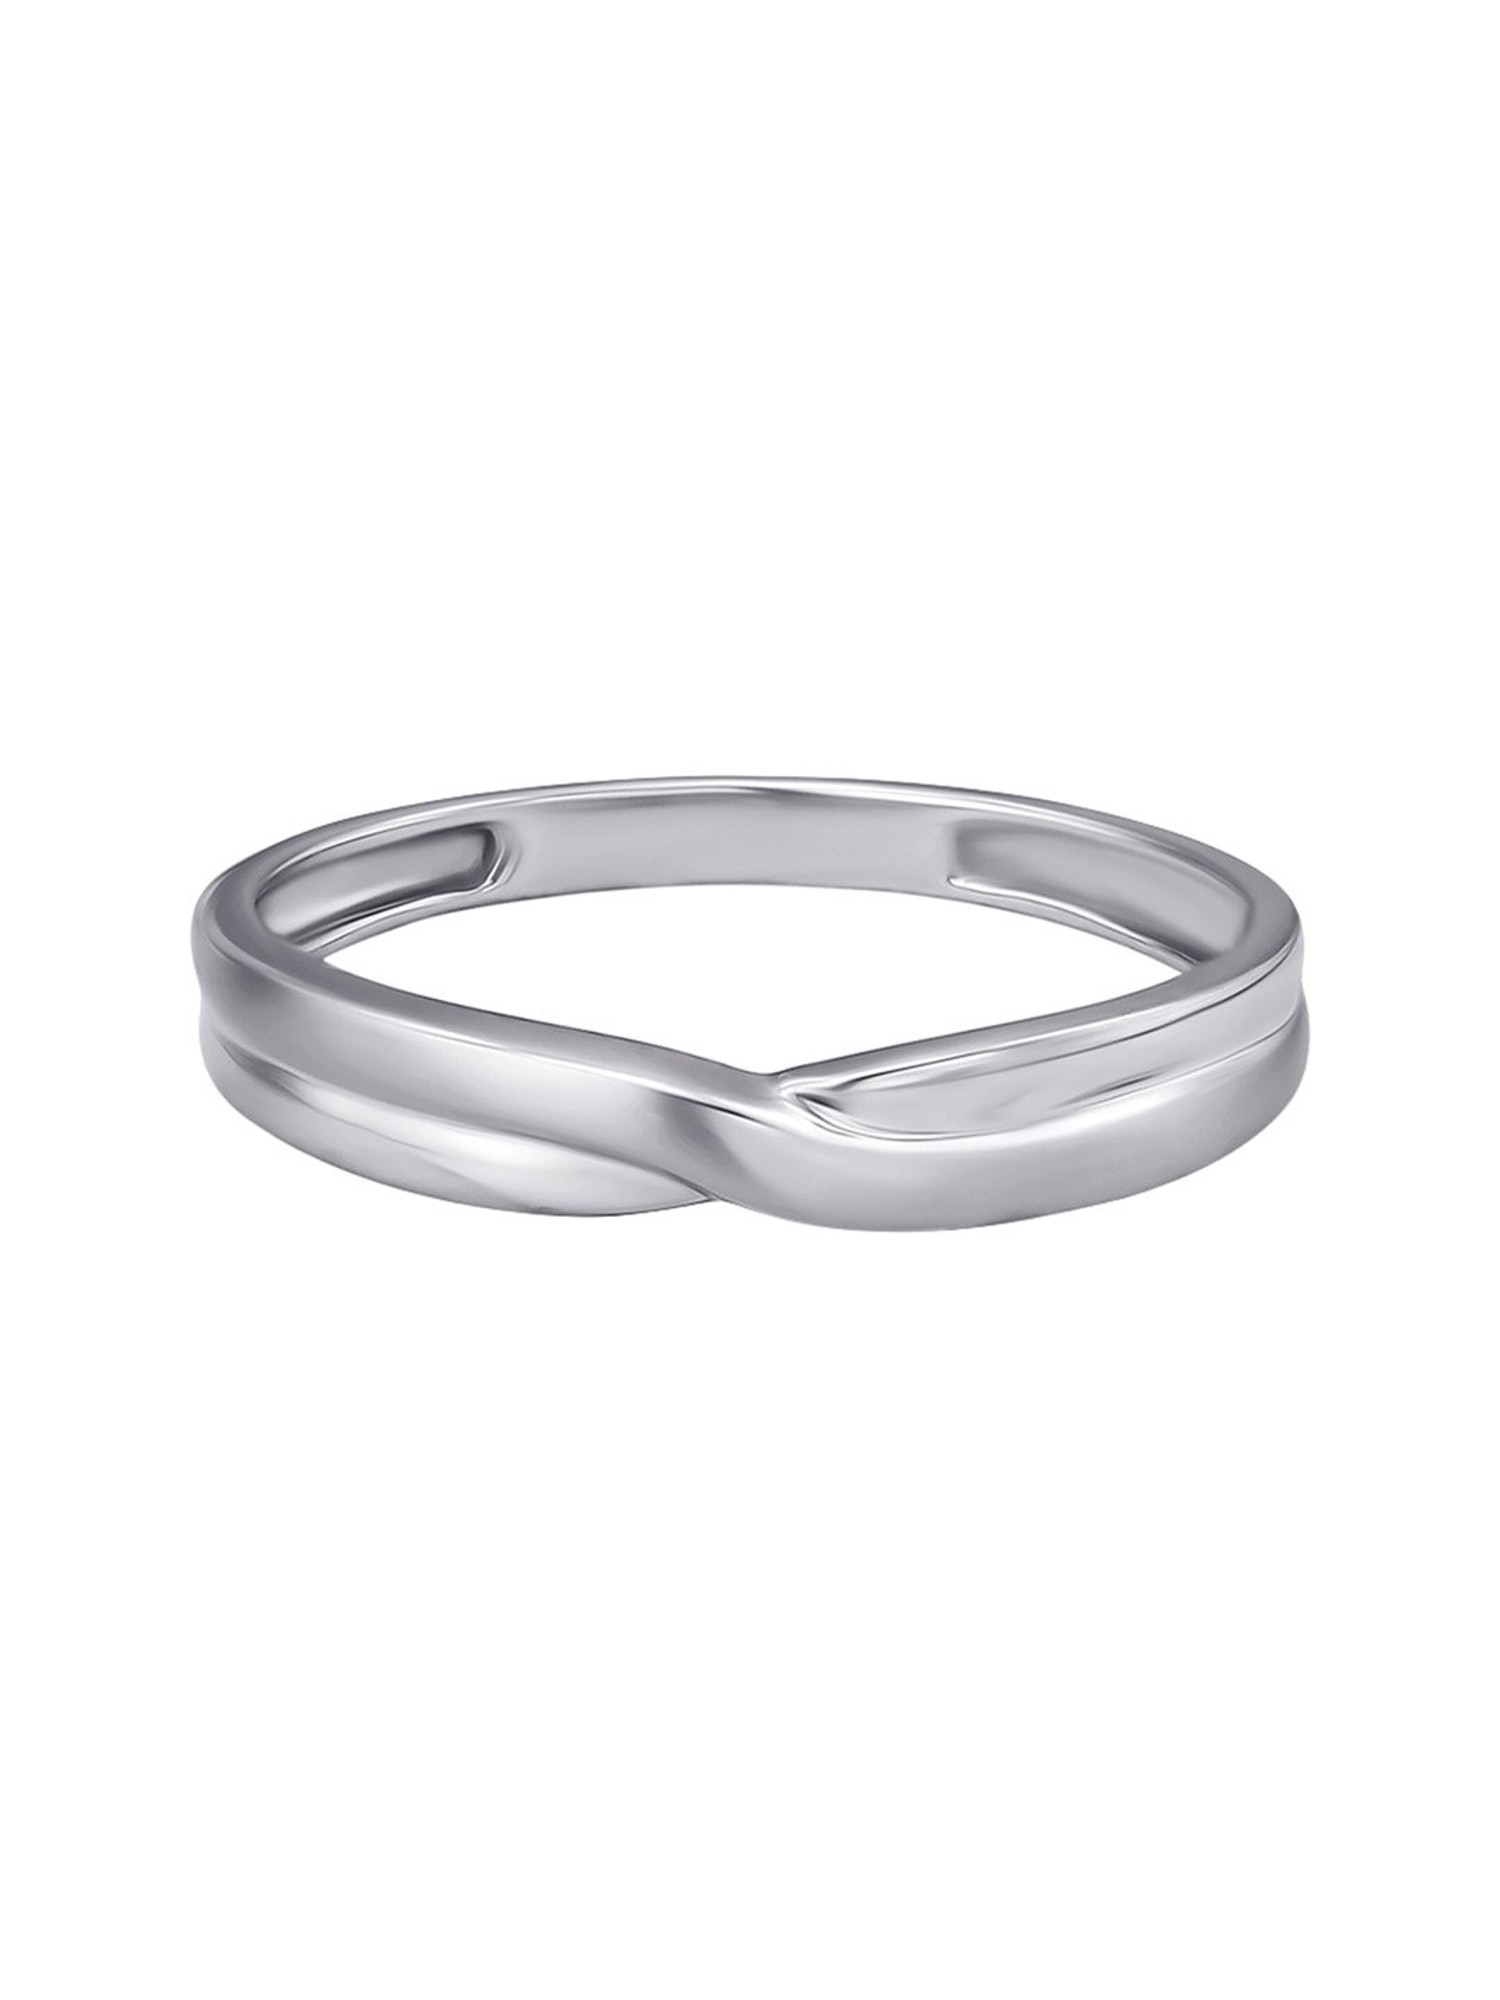 Splendid Platinum Ring | Tanishq-happymobile.vn